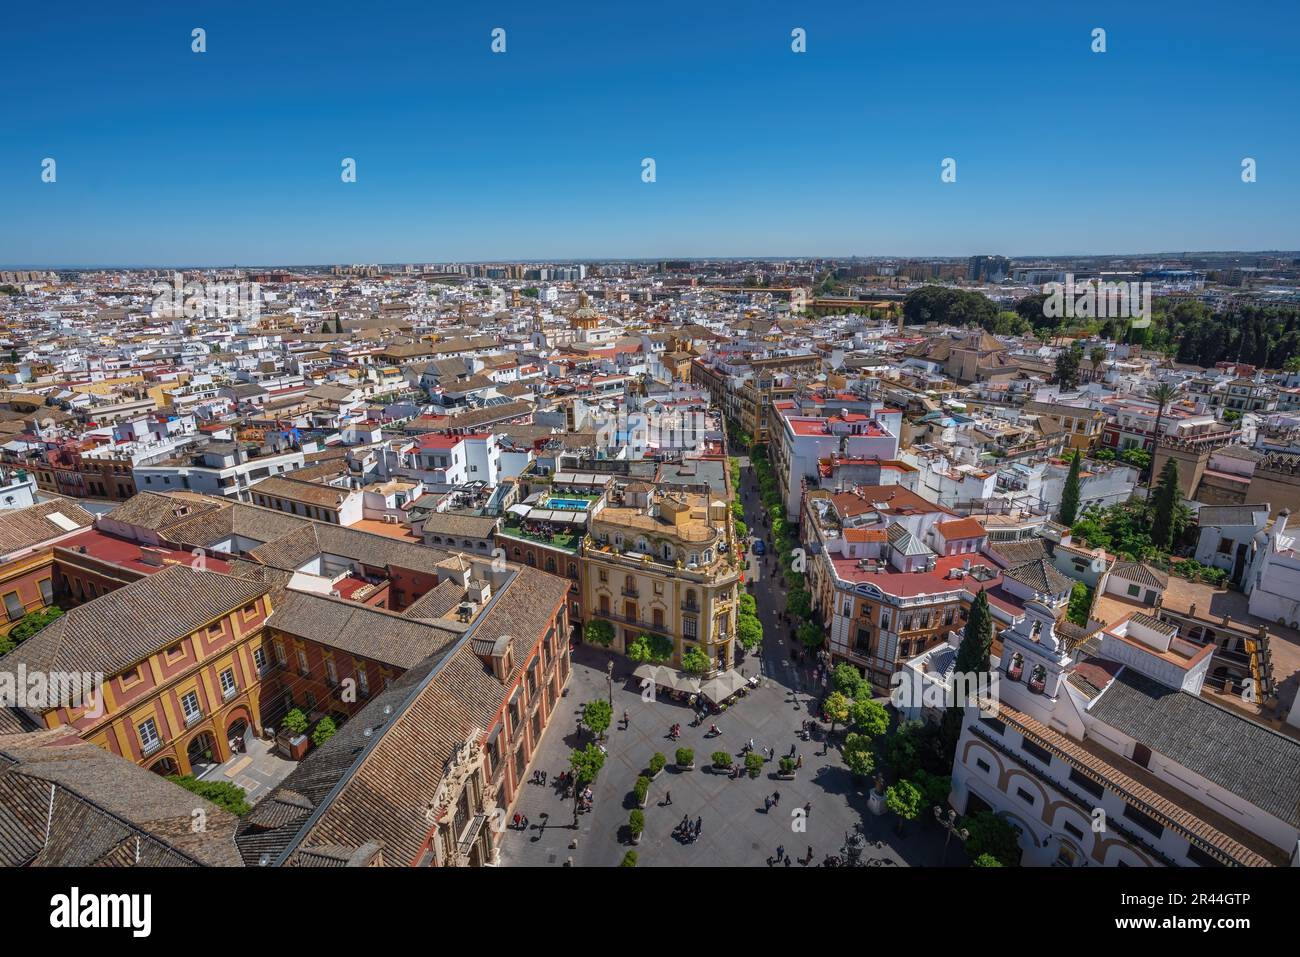 Blick aus der Vogelperspektive auf Sevilla und Plaza Virgen de Los Reyes Square - Sevilla, Andalusien, Spanien Stockfoto